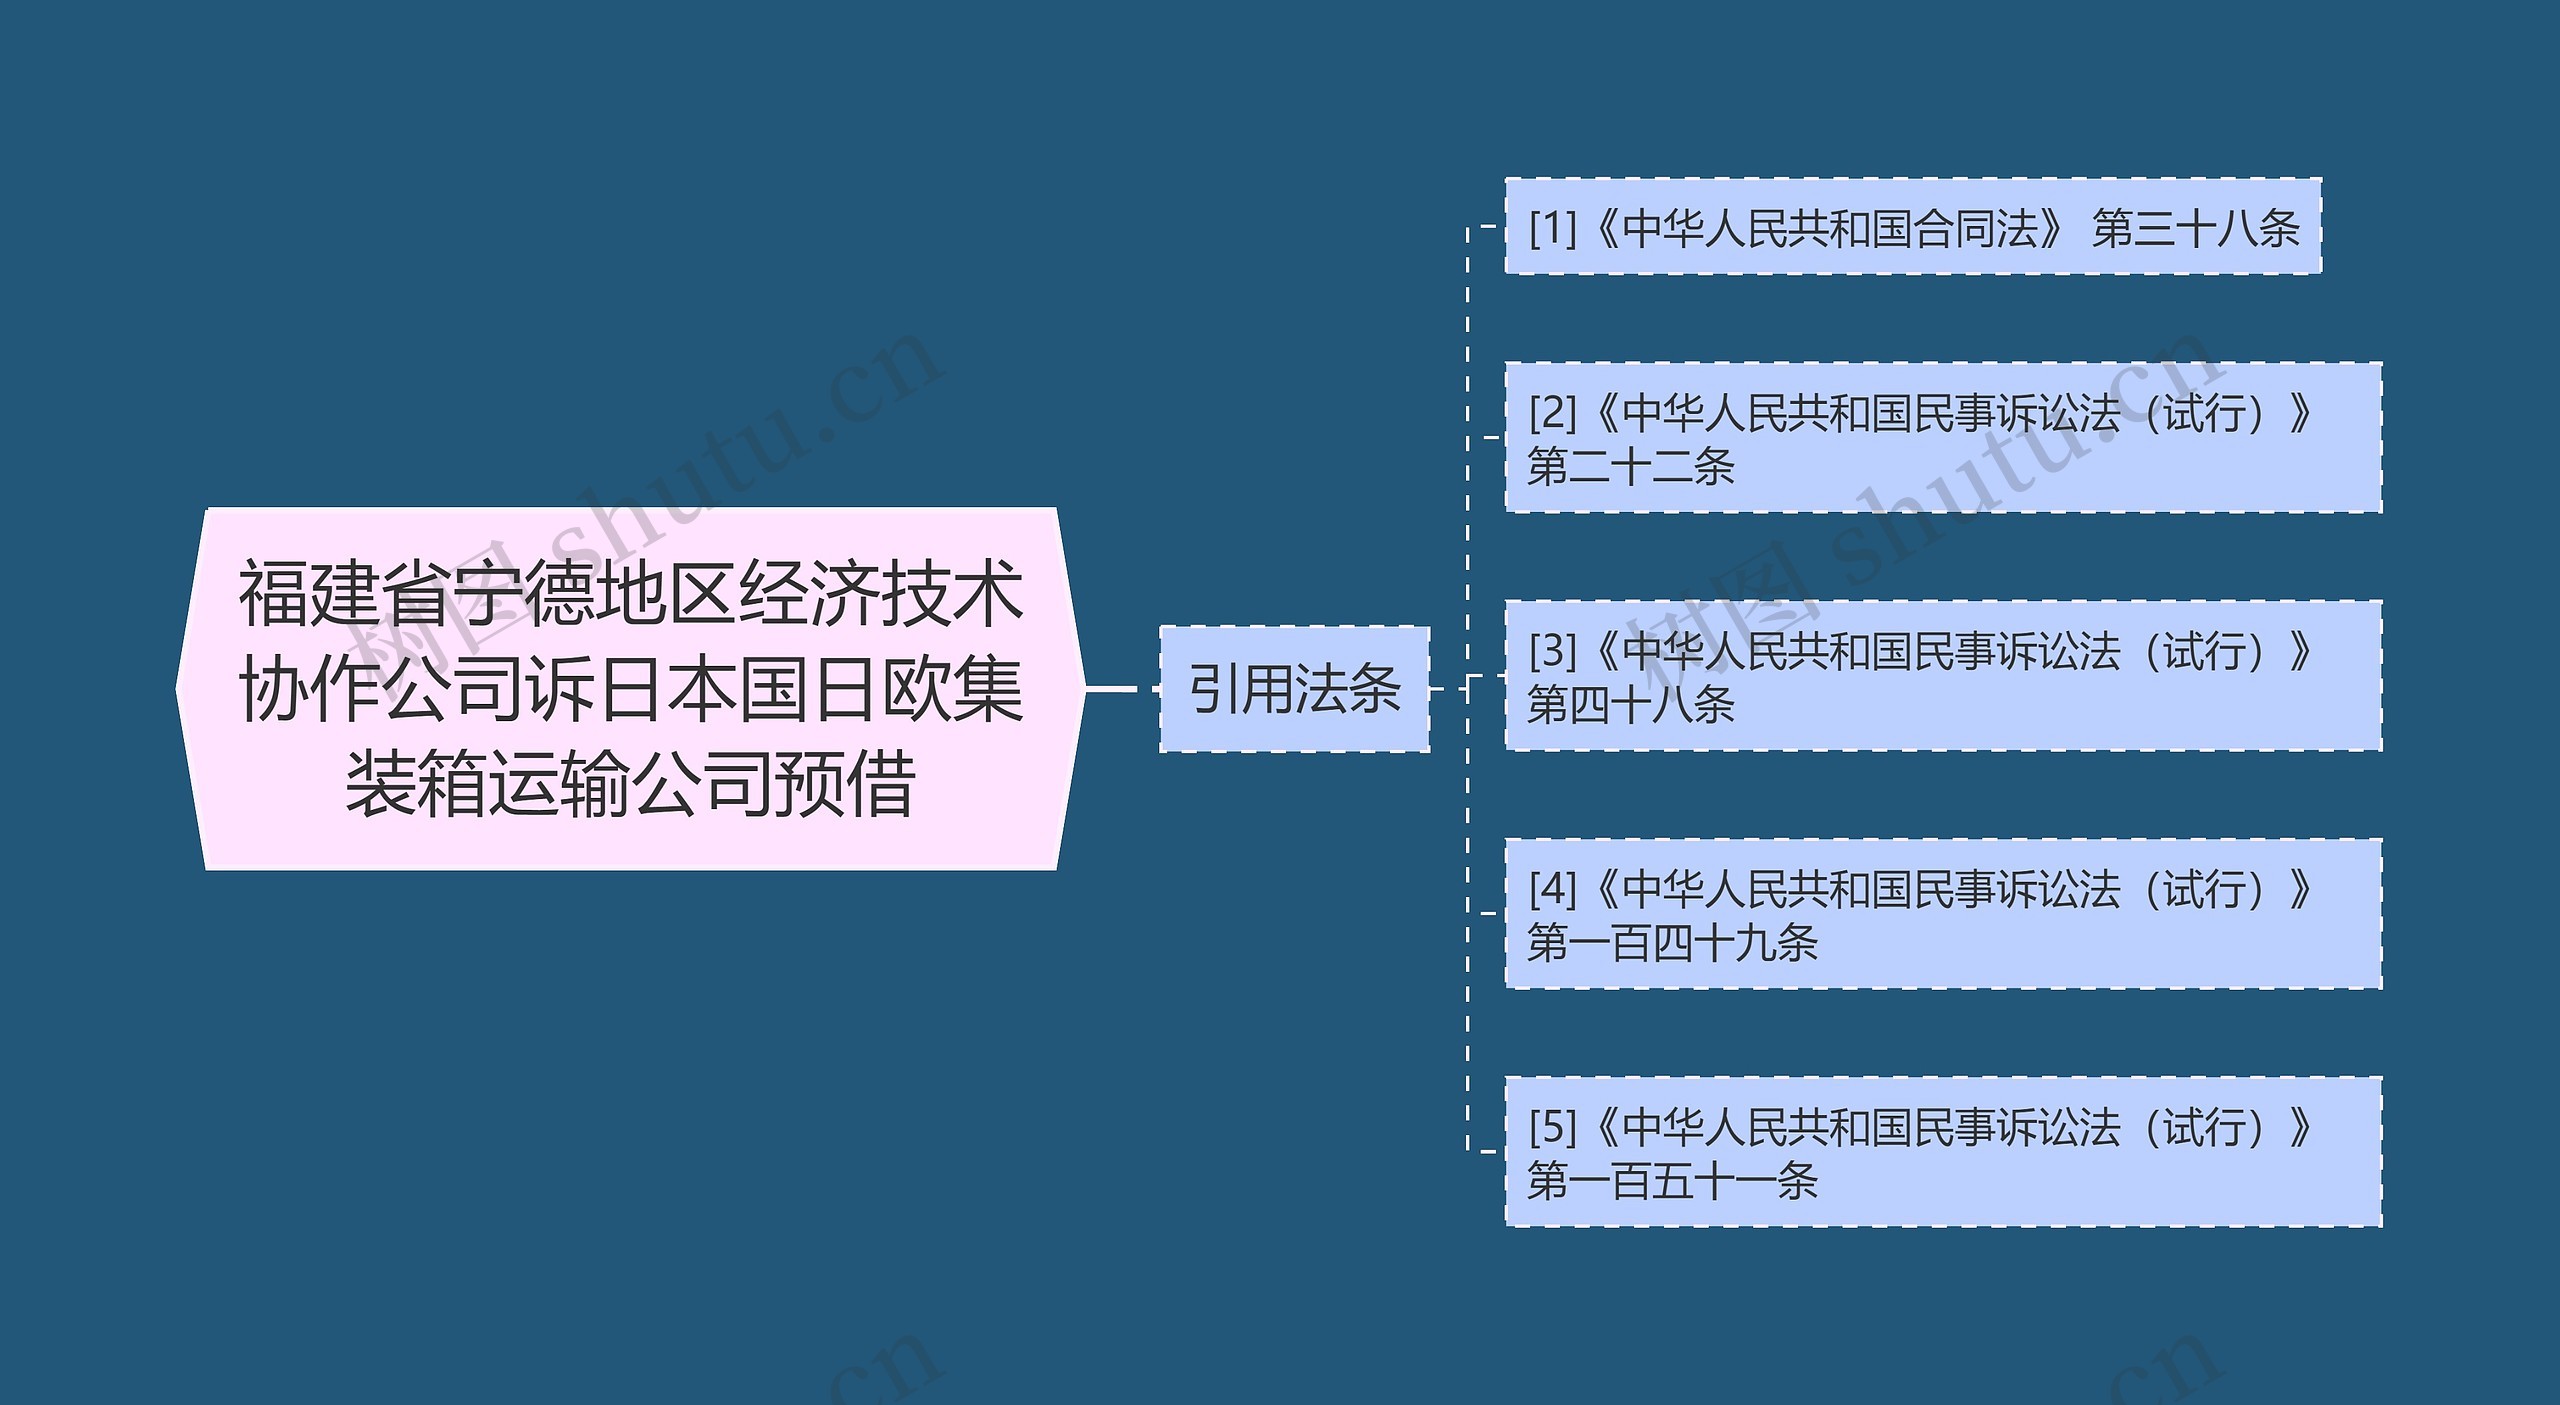 福建省宁德地区经济技术协作公司诉日本国日欧集装箱运输公司预借